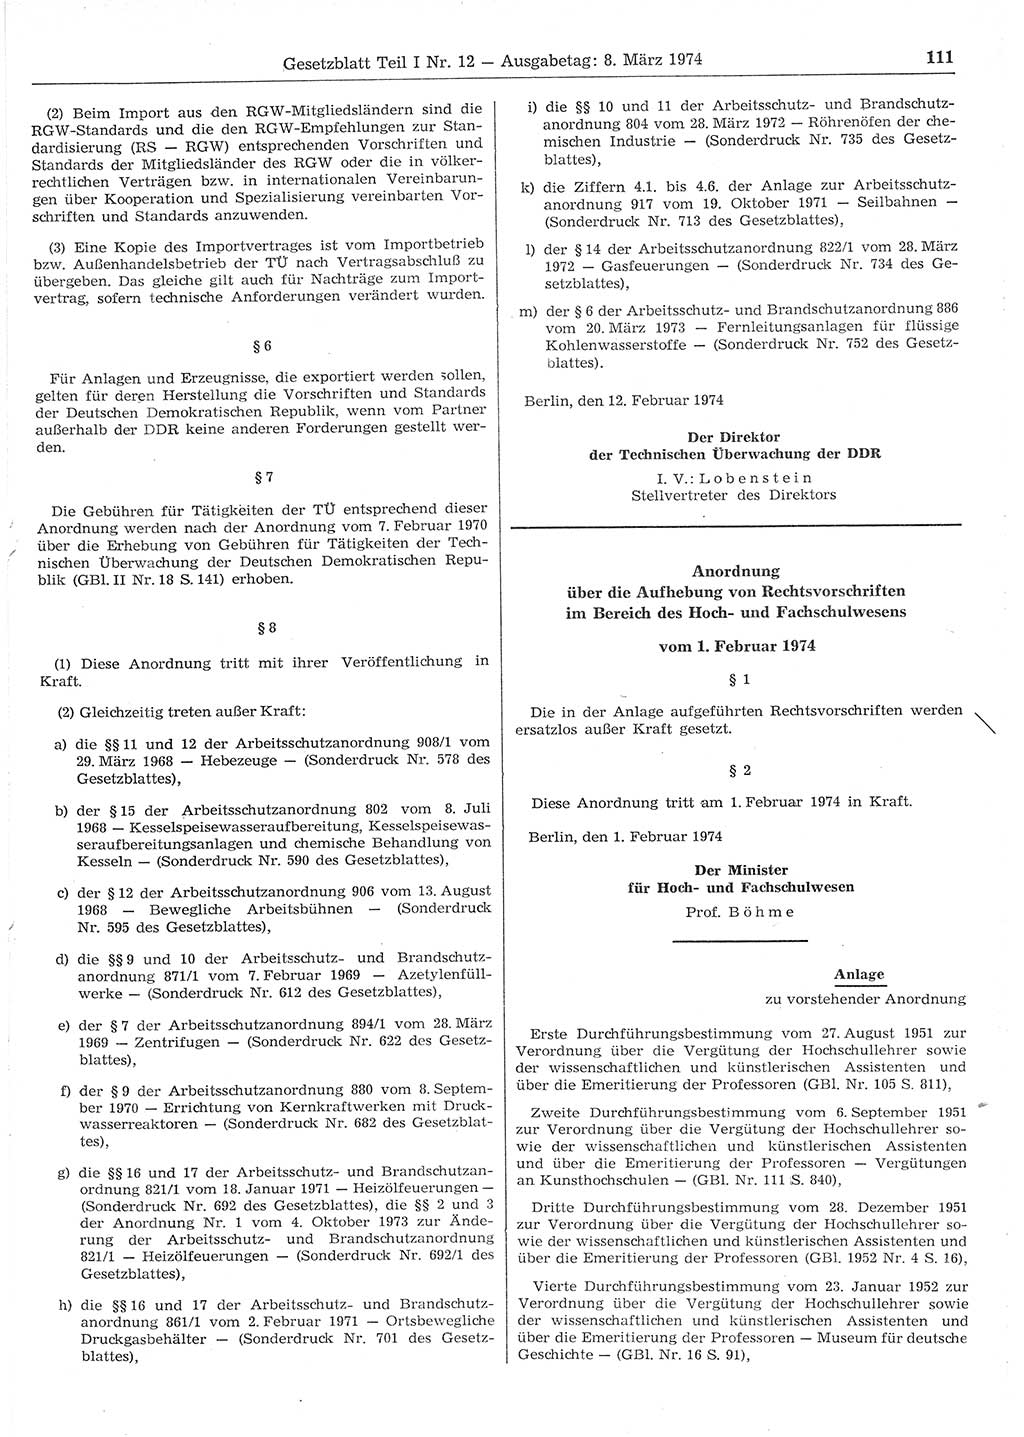 Gesetzblatt (GBl.) der Deutschen Demokratischen Republik (DDR) Teil Ⅰ 1974, Seite 111 (GBl. DDR Ⅰ 1974, S. 111)